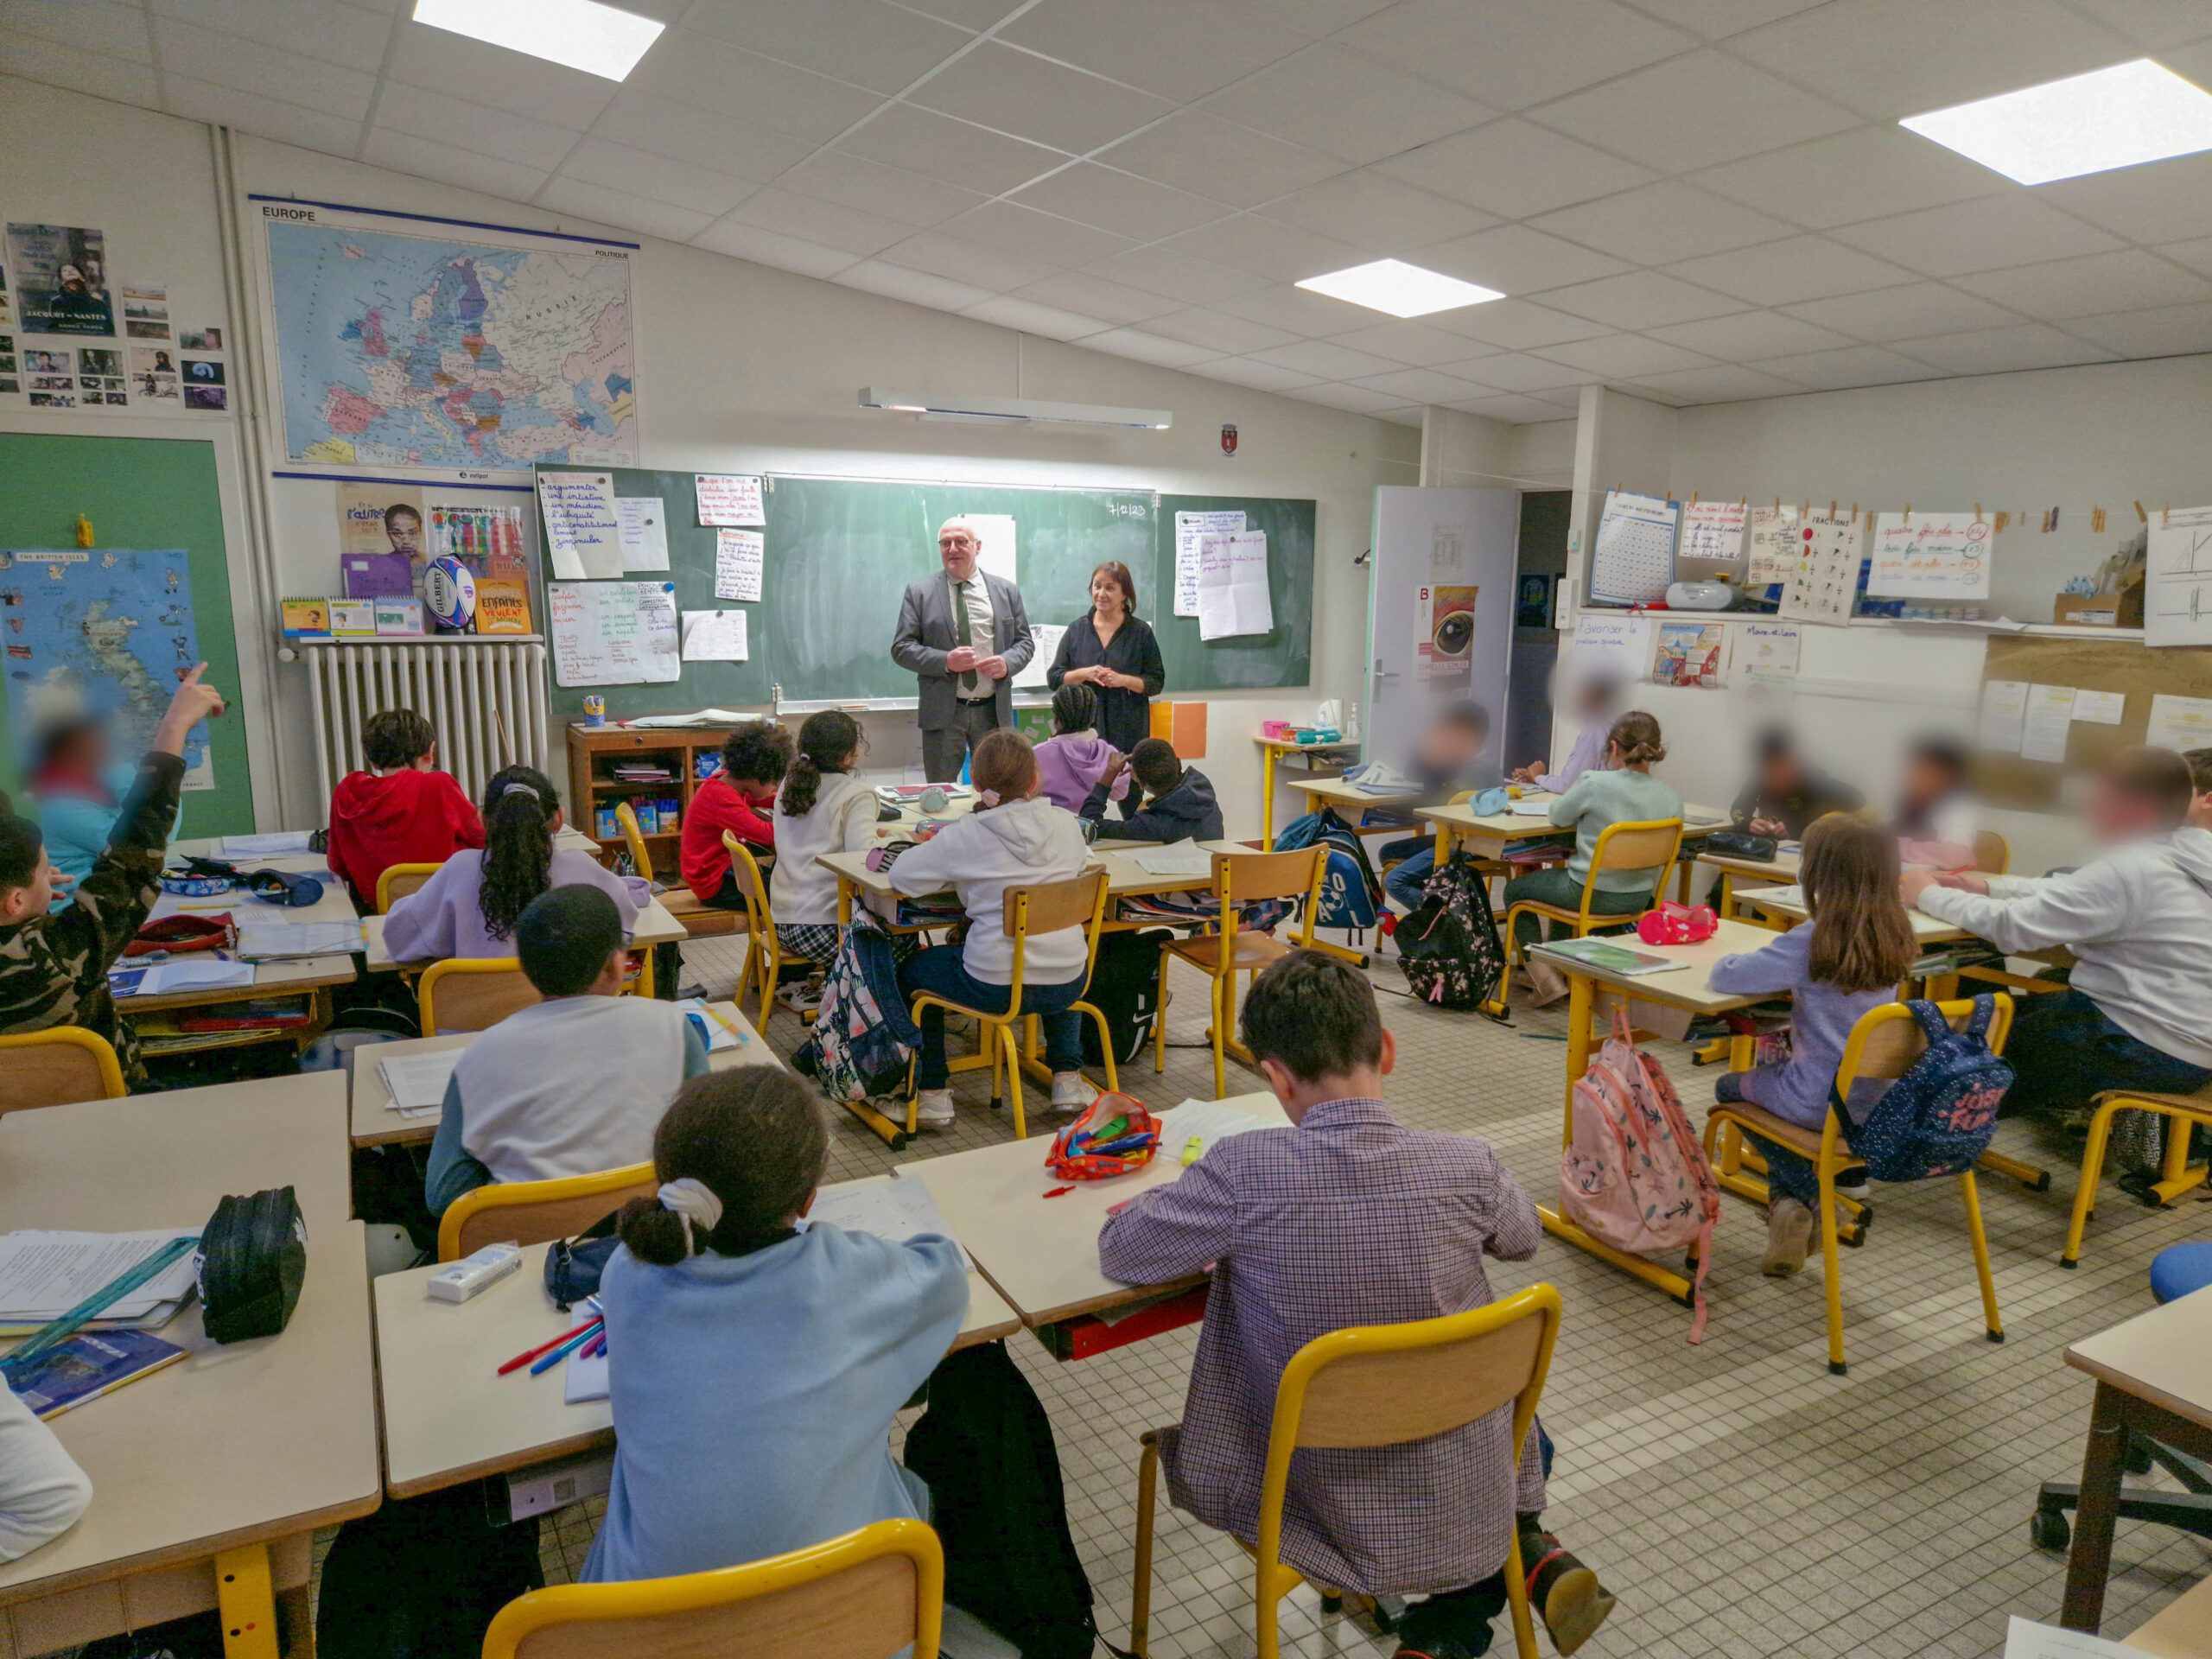 Visite à l’école élémentaire Henri Chiron à Angers dans le cadre du “Parlement des enfants”.